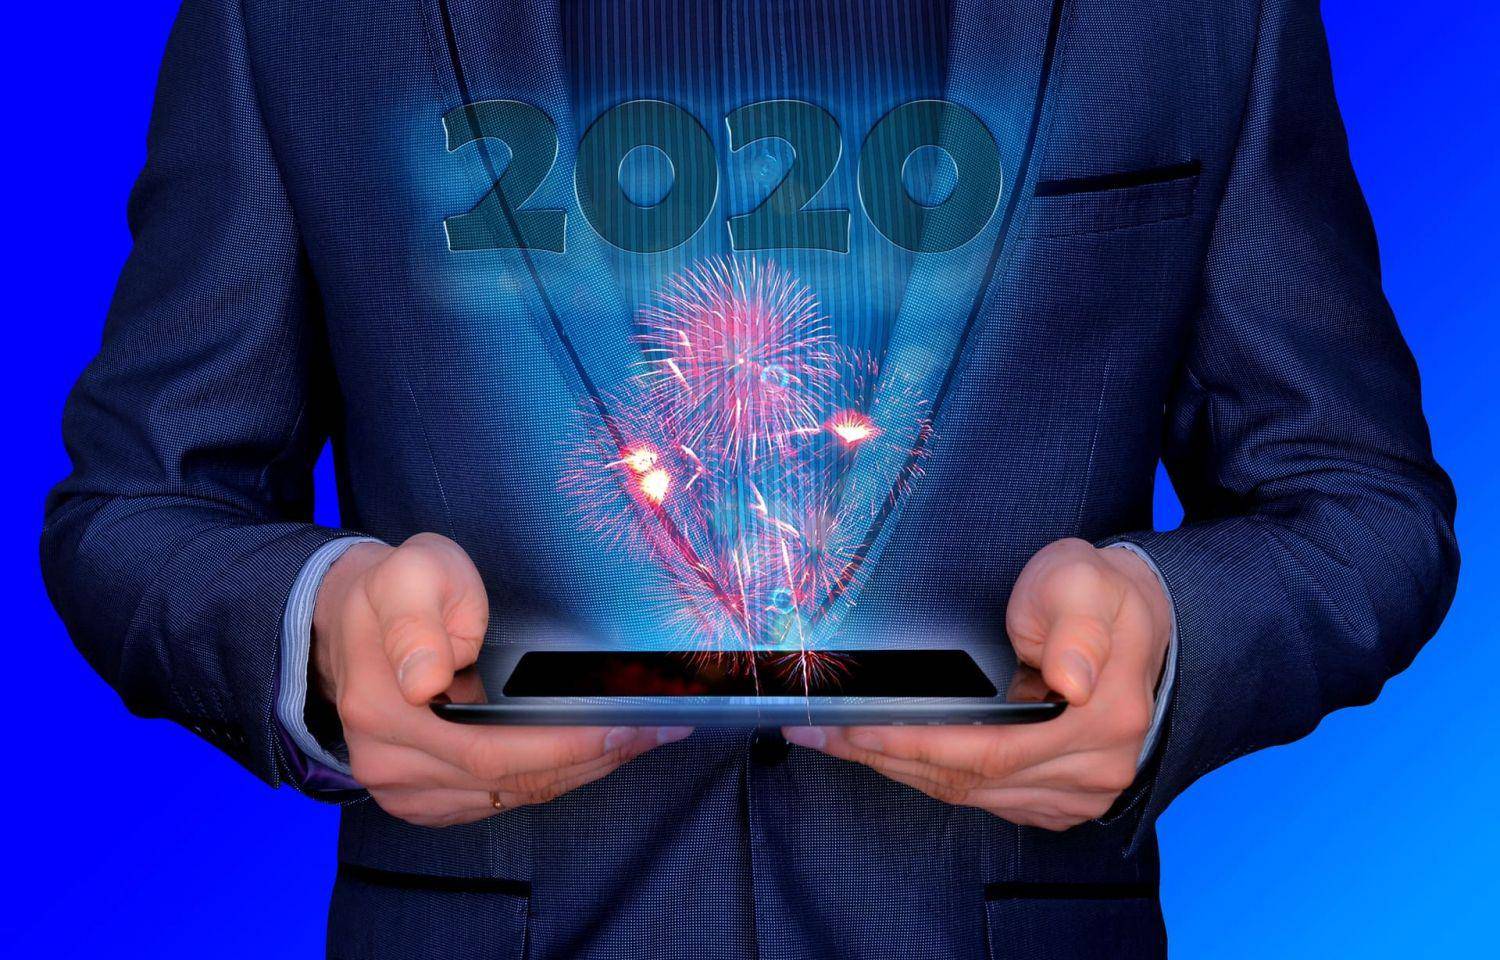 Онлайн бизнес: 17 идей интернет-бизнеса в 2021 году